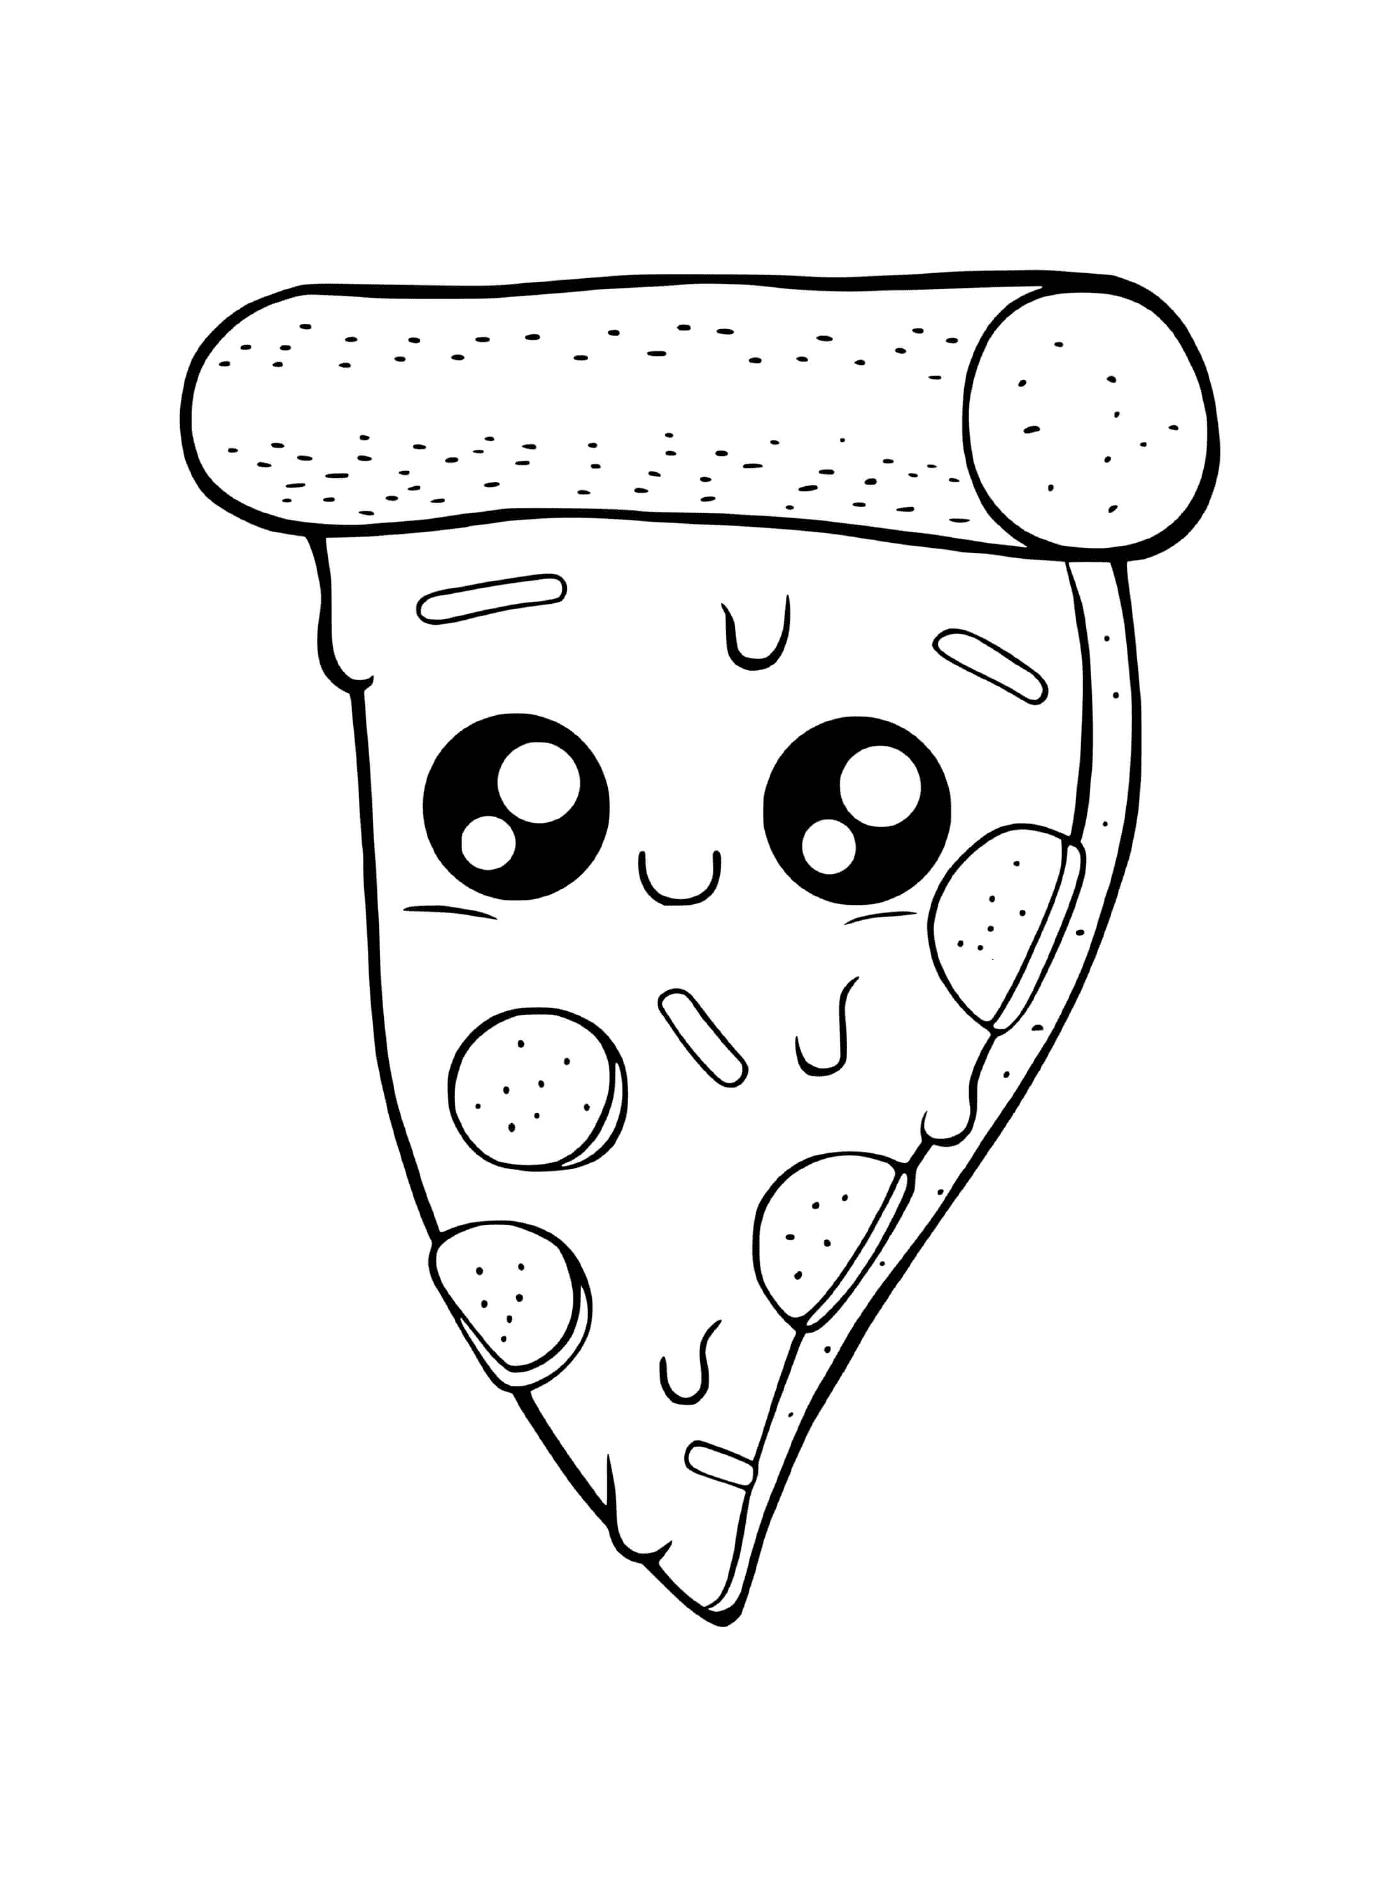  Uma pizza com queijo derretido 